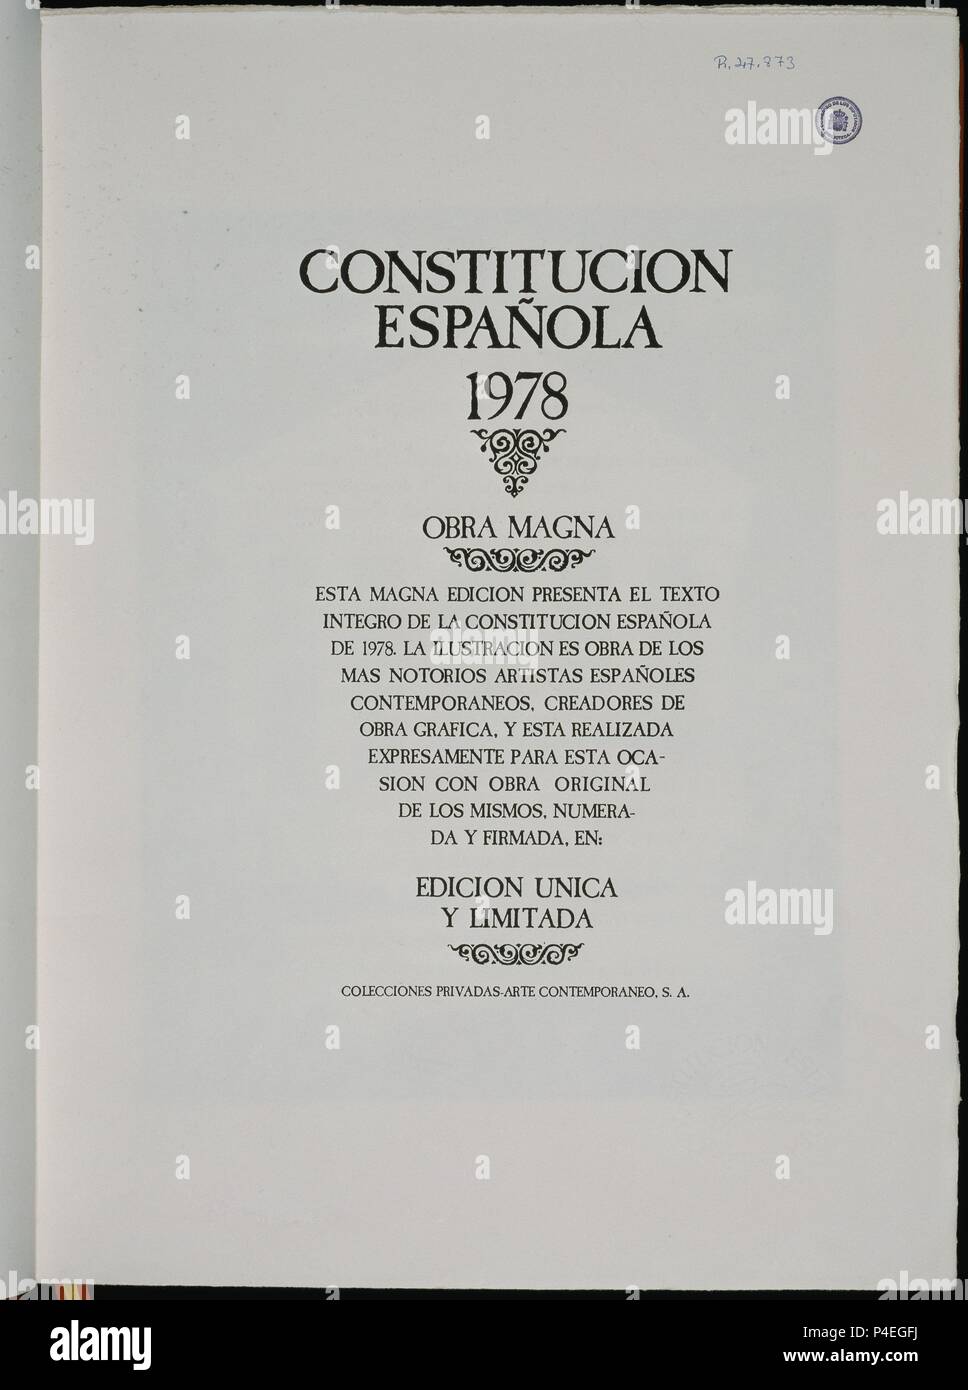 CONSTITUCION ESPAÑOLA 1978 - PORTADA - OBRA MAGNA - EDICION UNICA/LIMITADA - EDICIONES PRIVADAS. Location: CONGRESO DE LOS DIPUTADOS-BIBLIOTECA, MADRID, SPAIN. Stock Photo